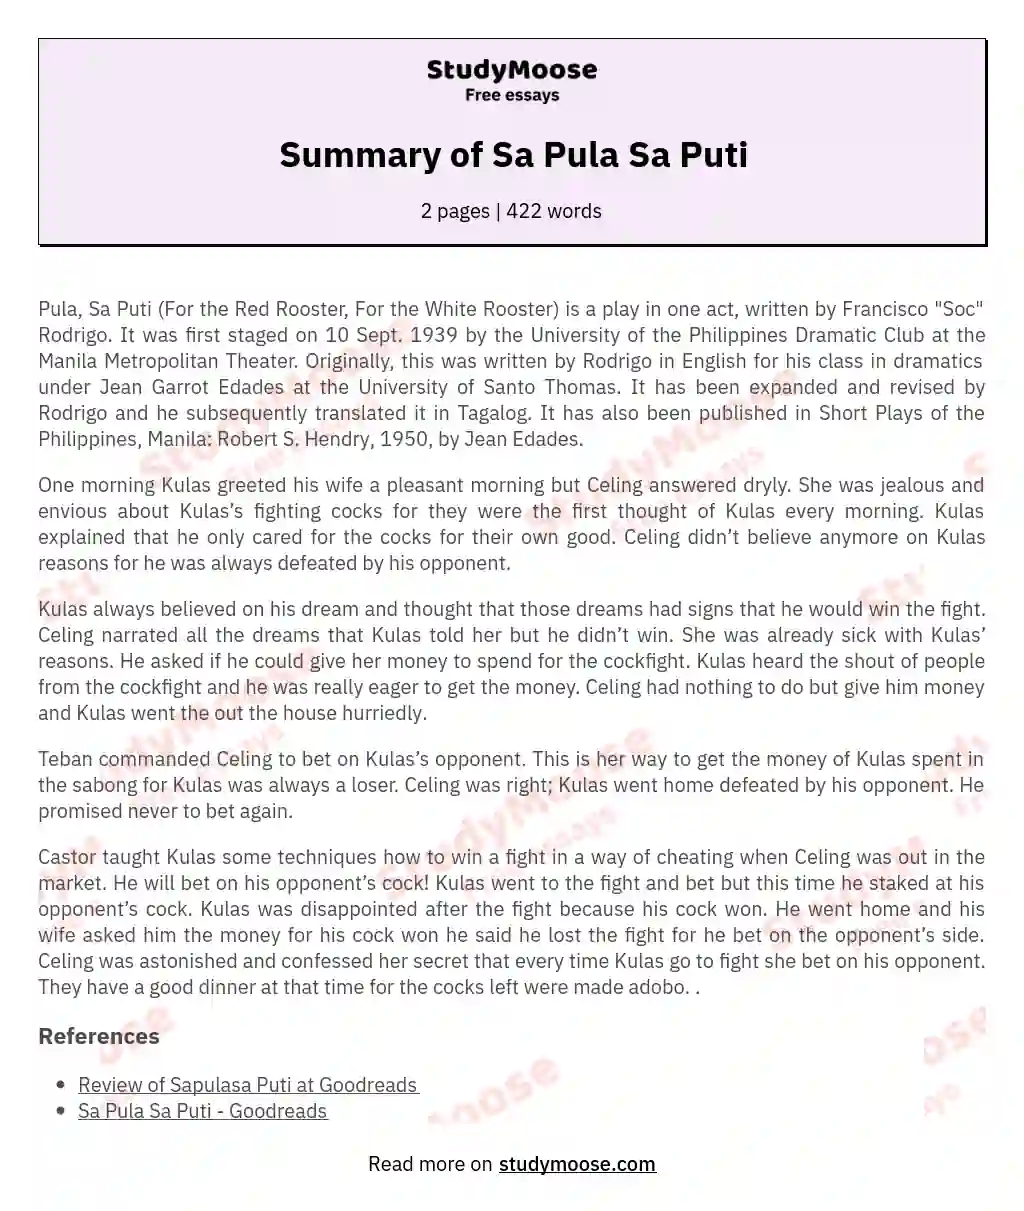 Summary of Sa Pula Sa Puti essay